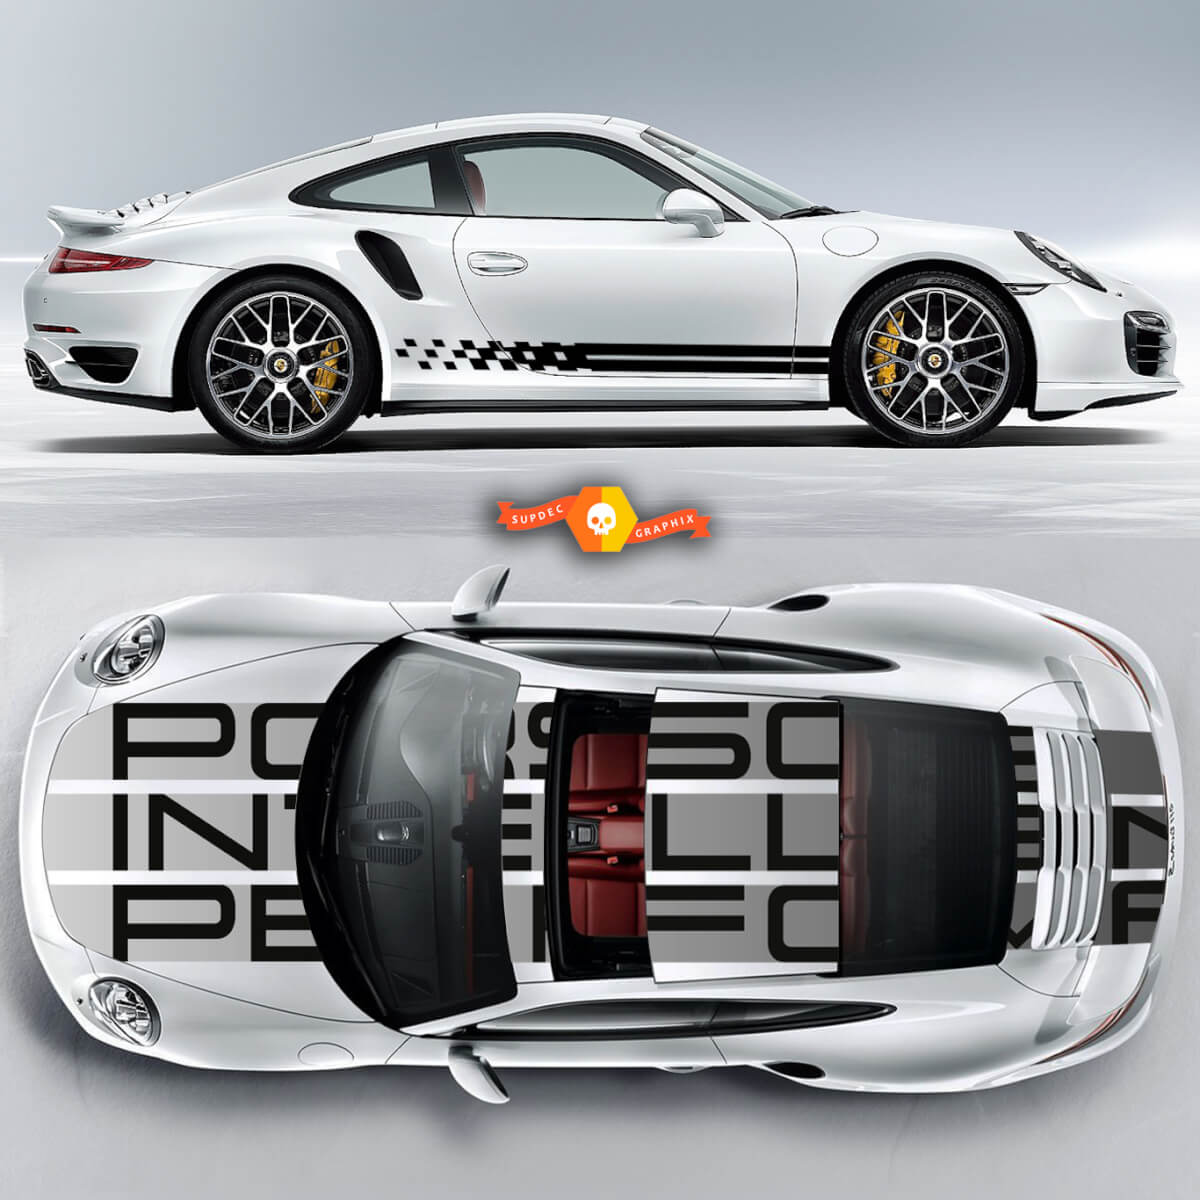 Erstaunliche Porsche Carrera 911 Endurance Racing Edition Streifen oder jeder Porsche